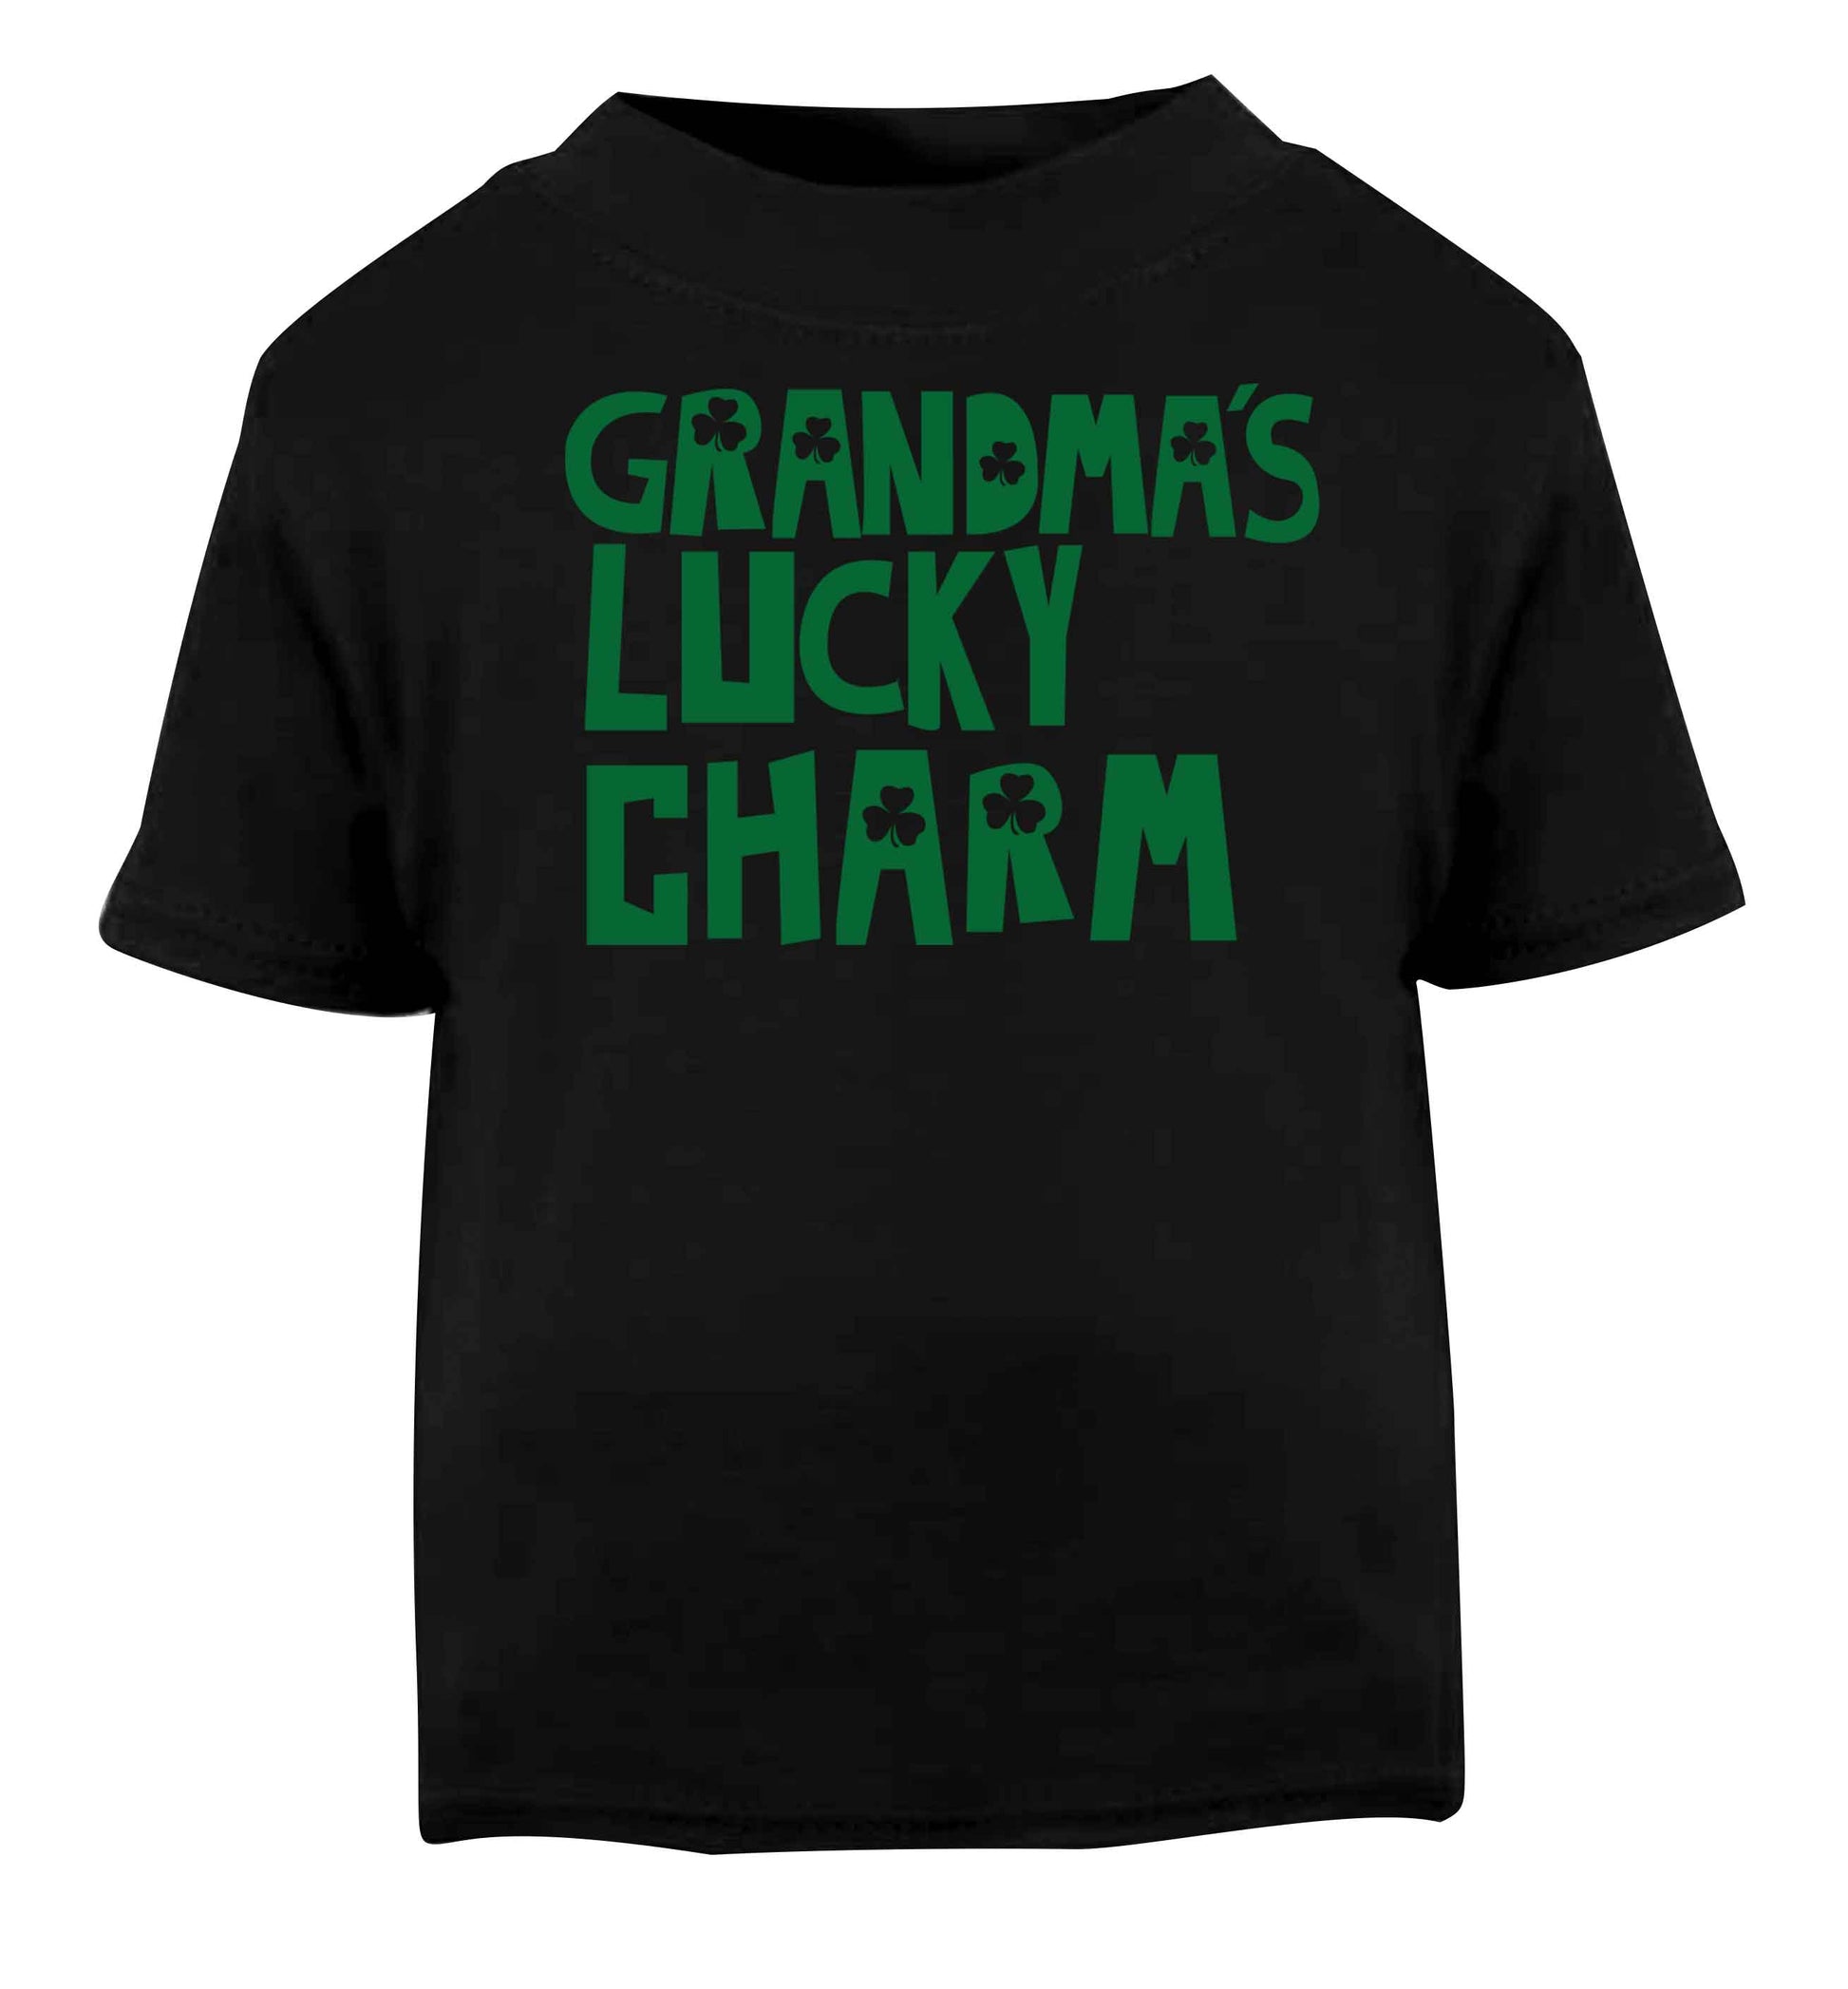 Grandma's lucky charm Black baby toddler Tshirt 2 years